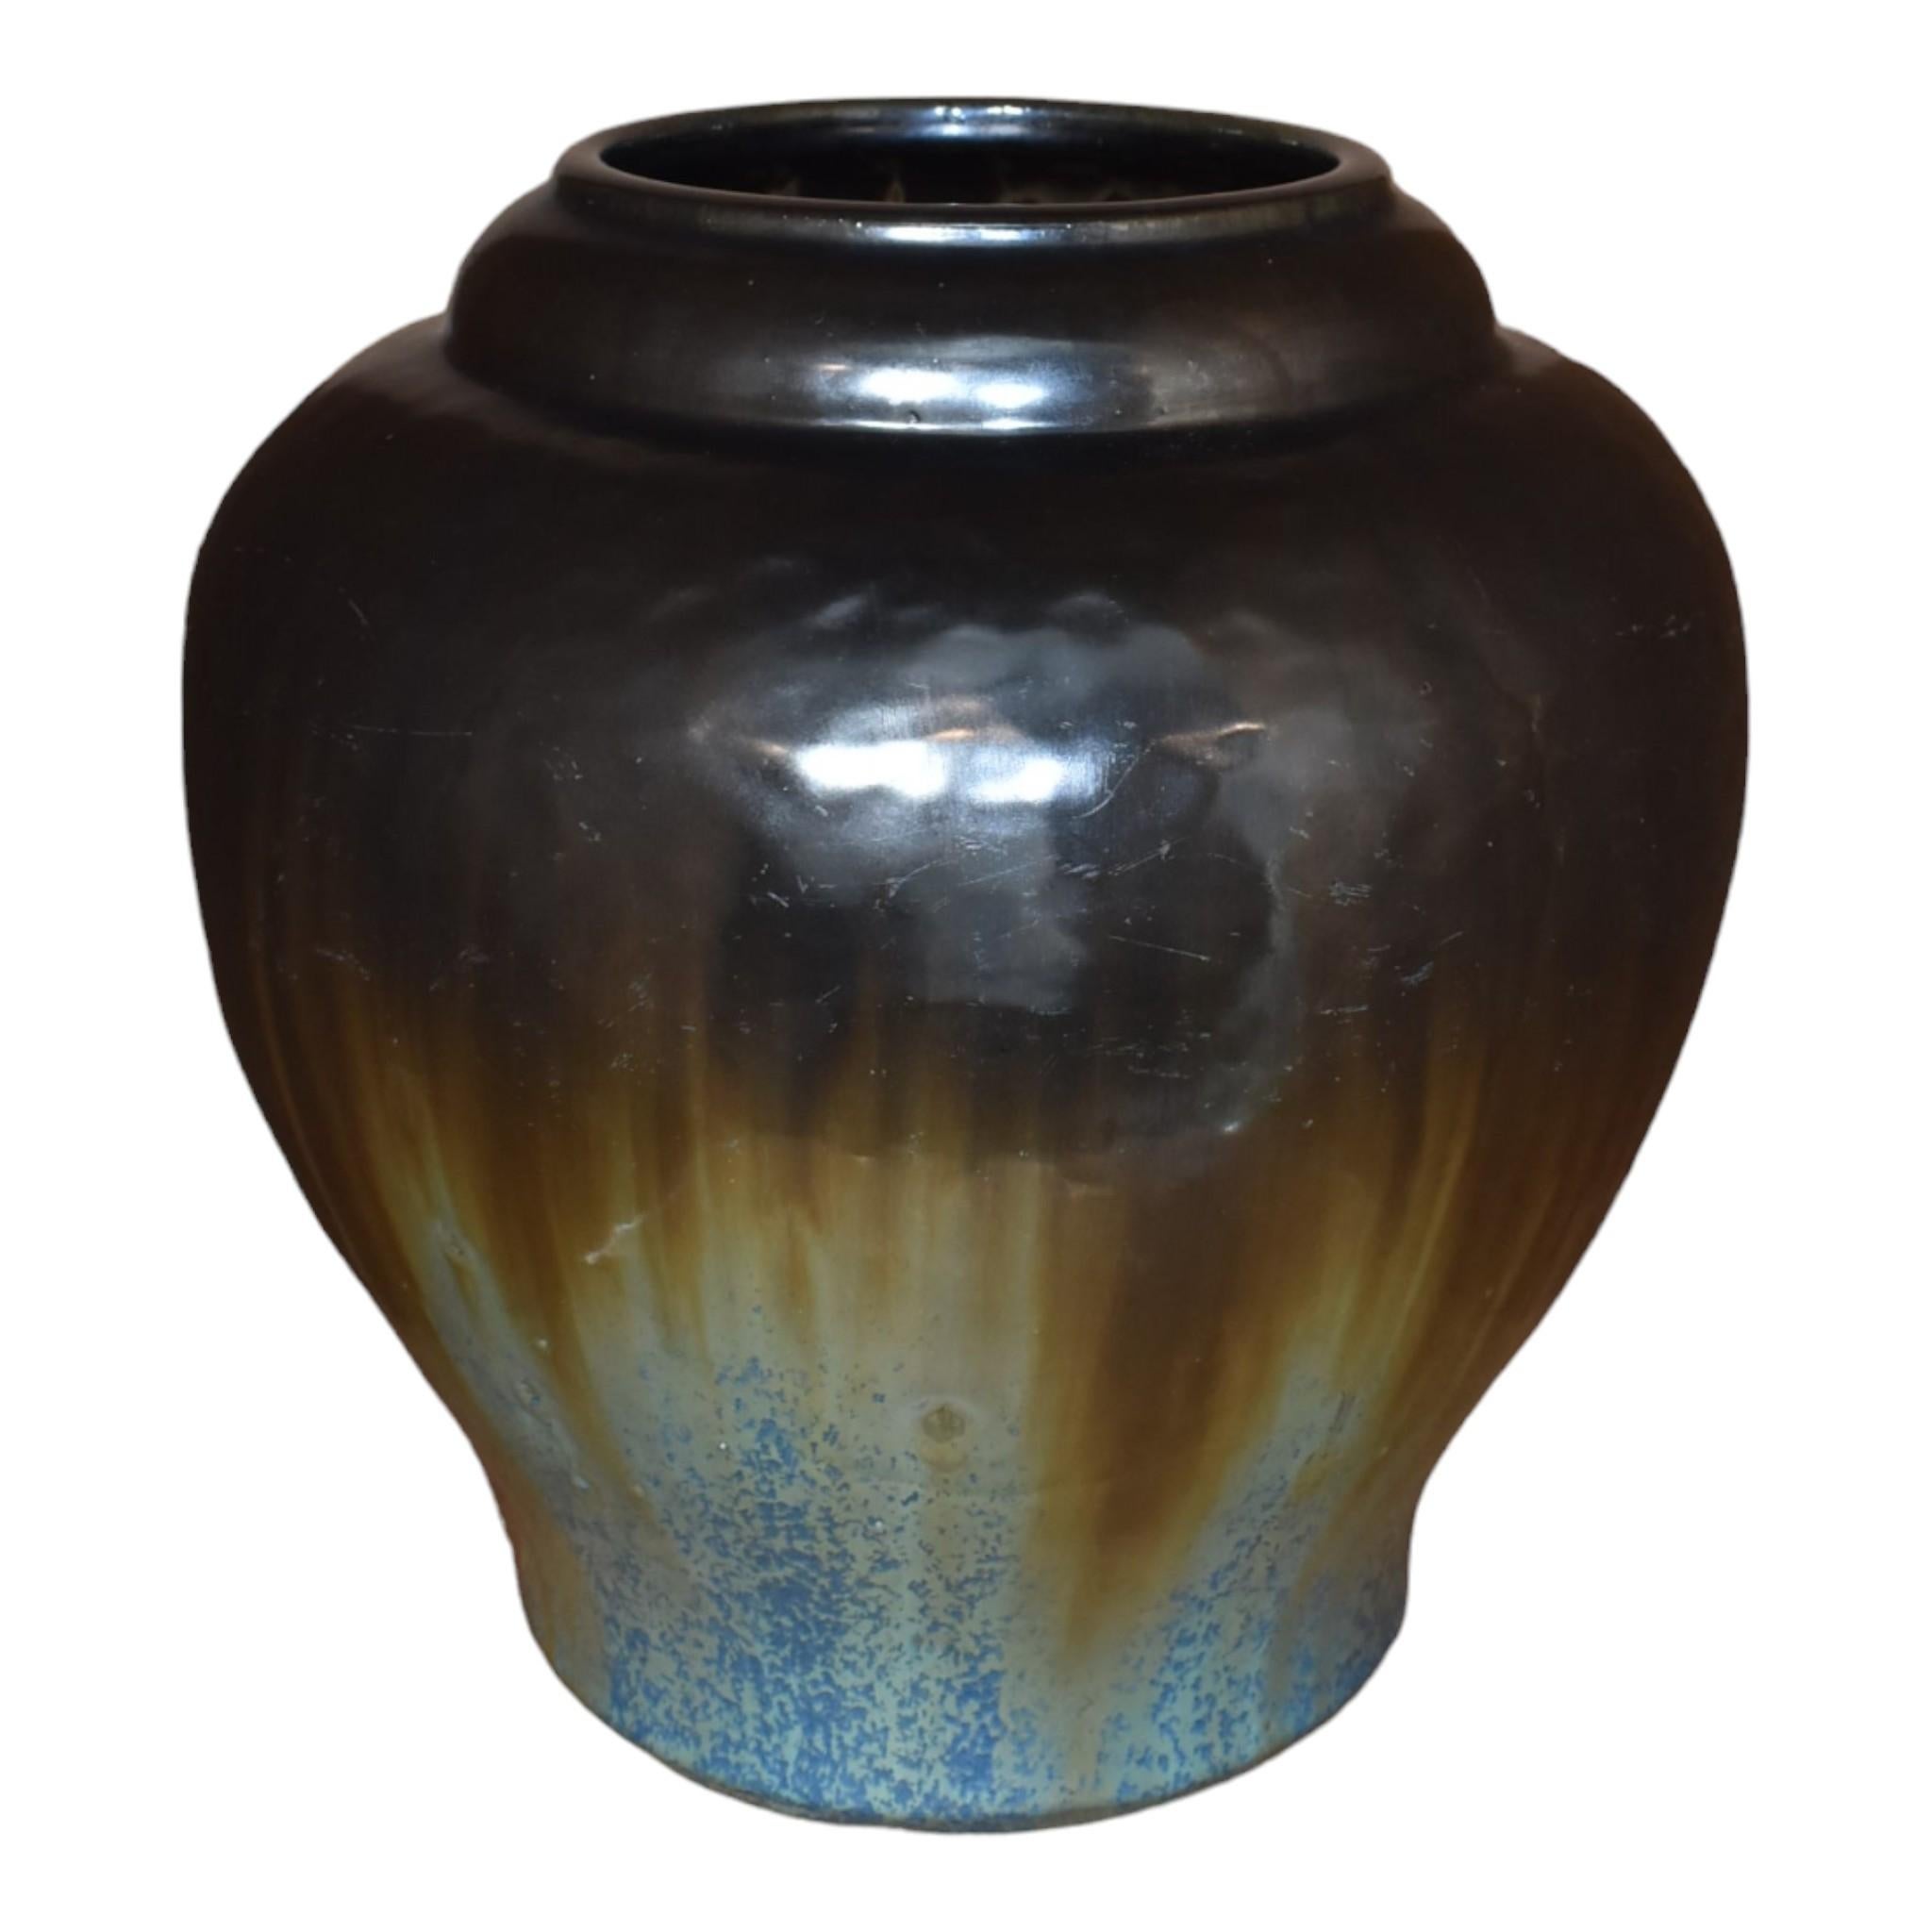 Fulper 1917-23 Arts and Crafts Pottery vase en céramique à glaçure flambée noire et bleue 591
Une forme massive et saisissante avec une merveilleuse glaçure gun metal coulant sur une glaçure bleue cristalline.
Excellent état. Pas d'ébréchures, de